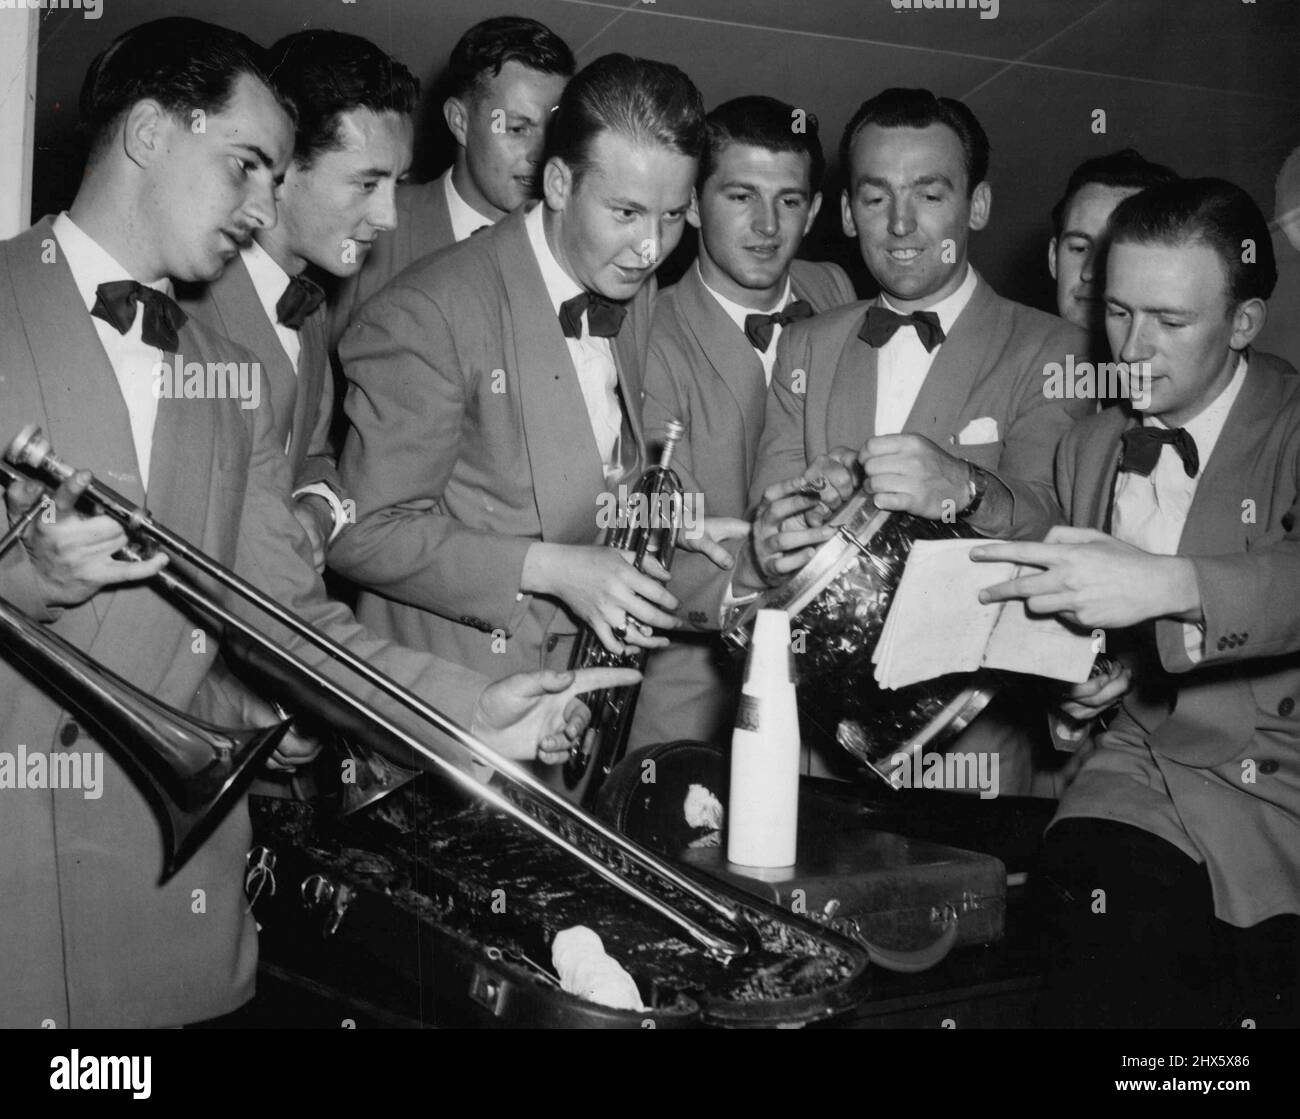 Wocka Dyer, Bill Tope, Geoff Bland, Frank Johnson, Wes, Brown, Jack Connelly, Geoff Kitchen ha fotografato a Sydney quando si unì alla battaglia indecisa delle band. Febbraio 13, 1950. (Foto di Glamour). Foto Stock